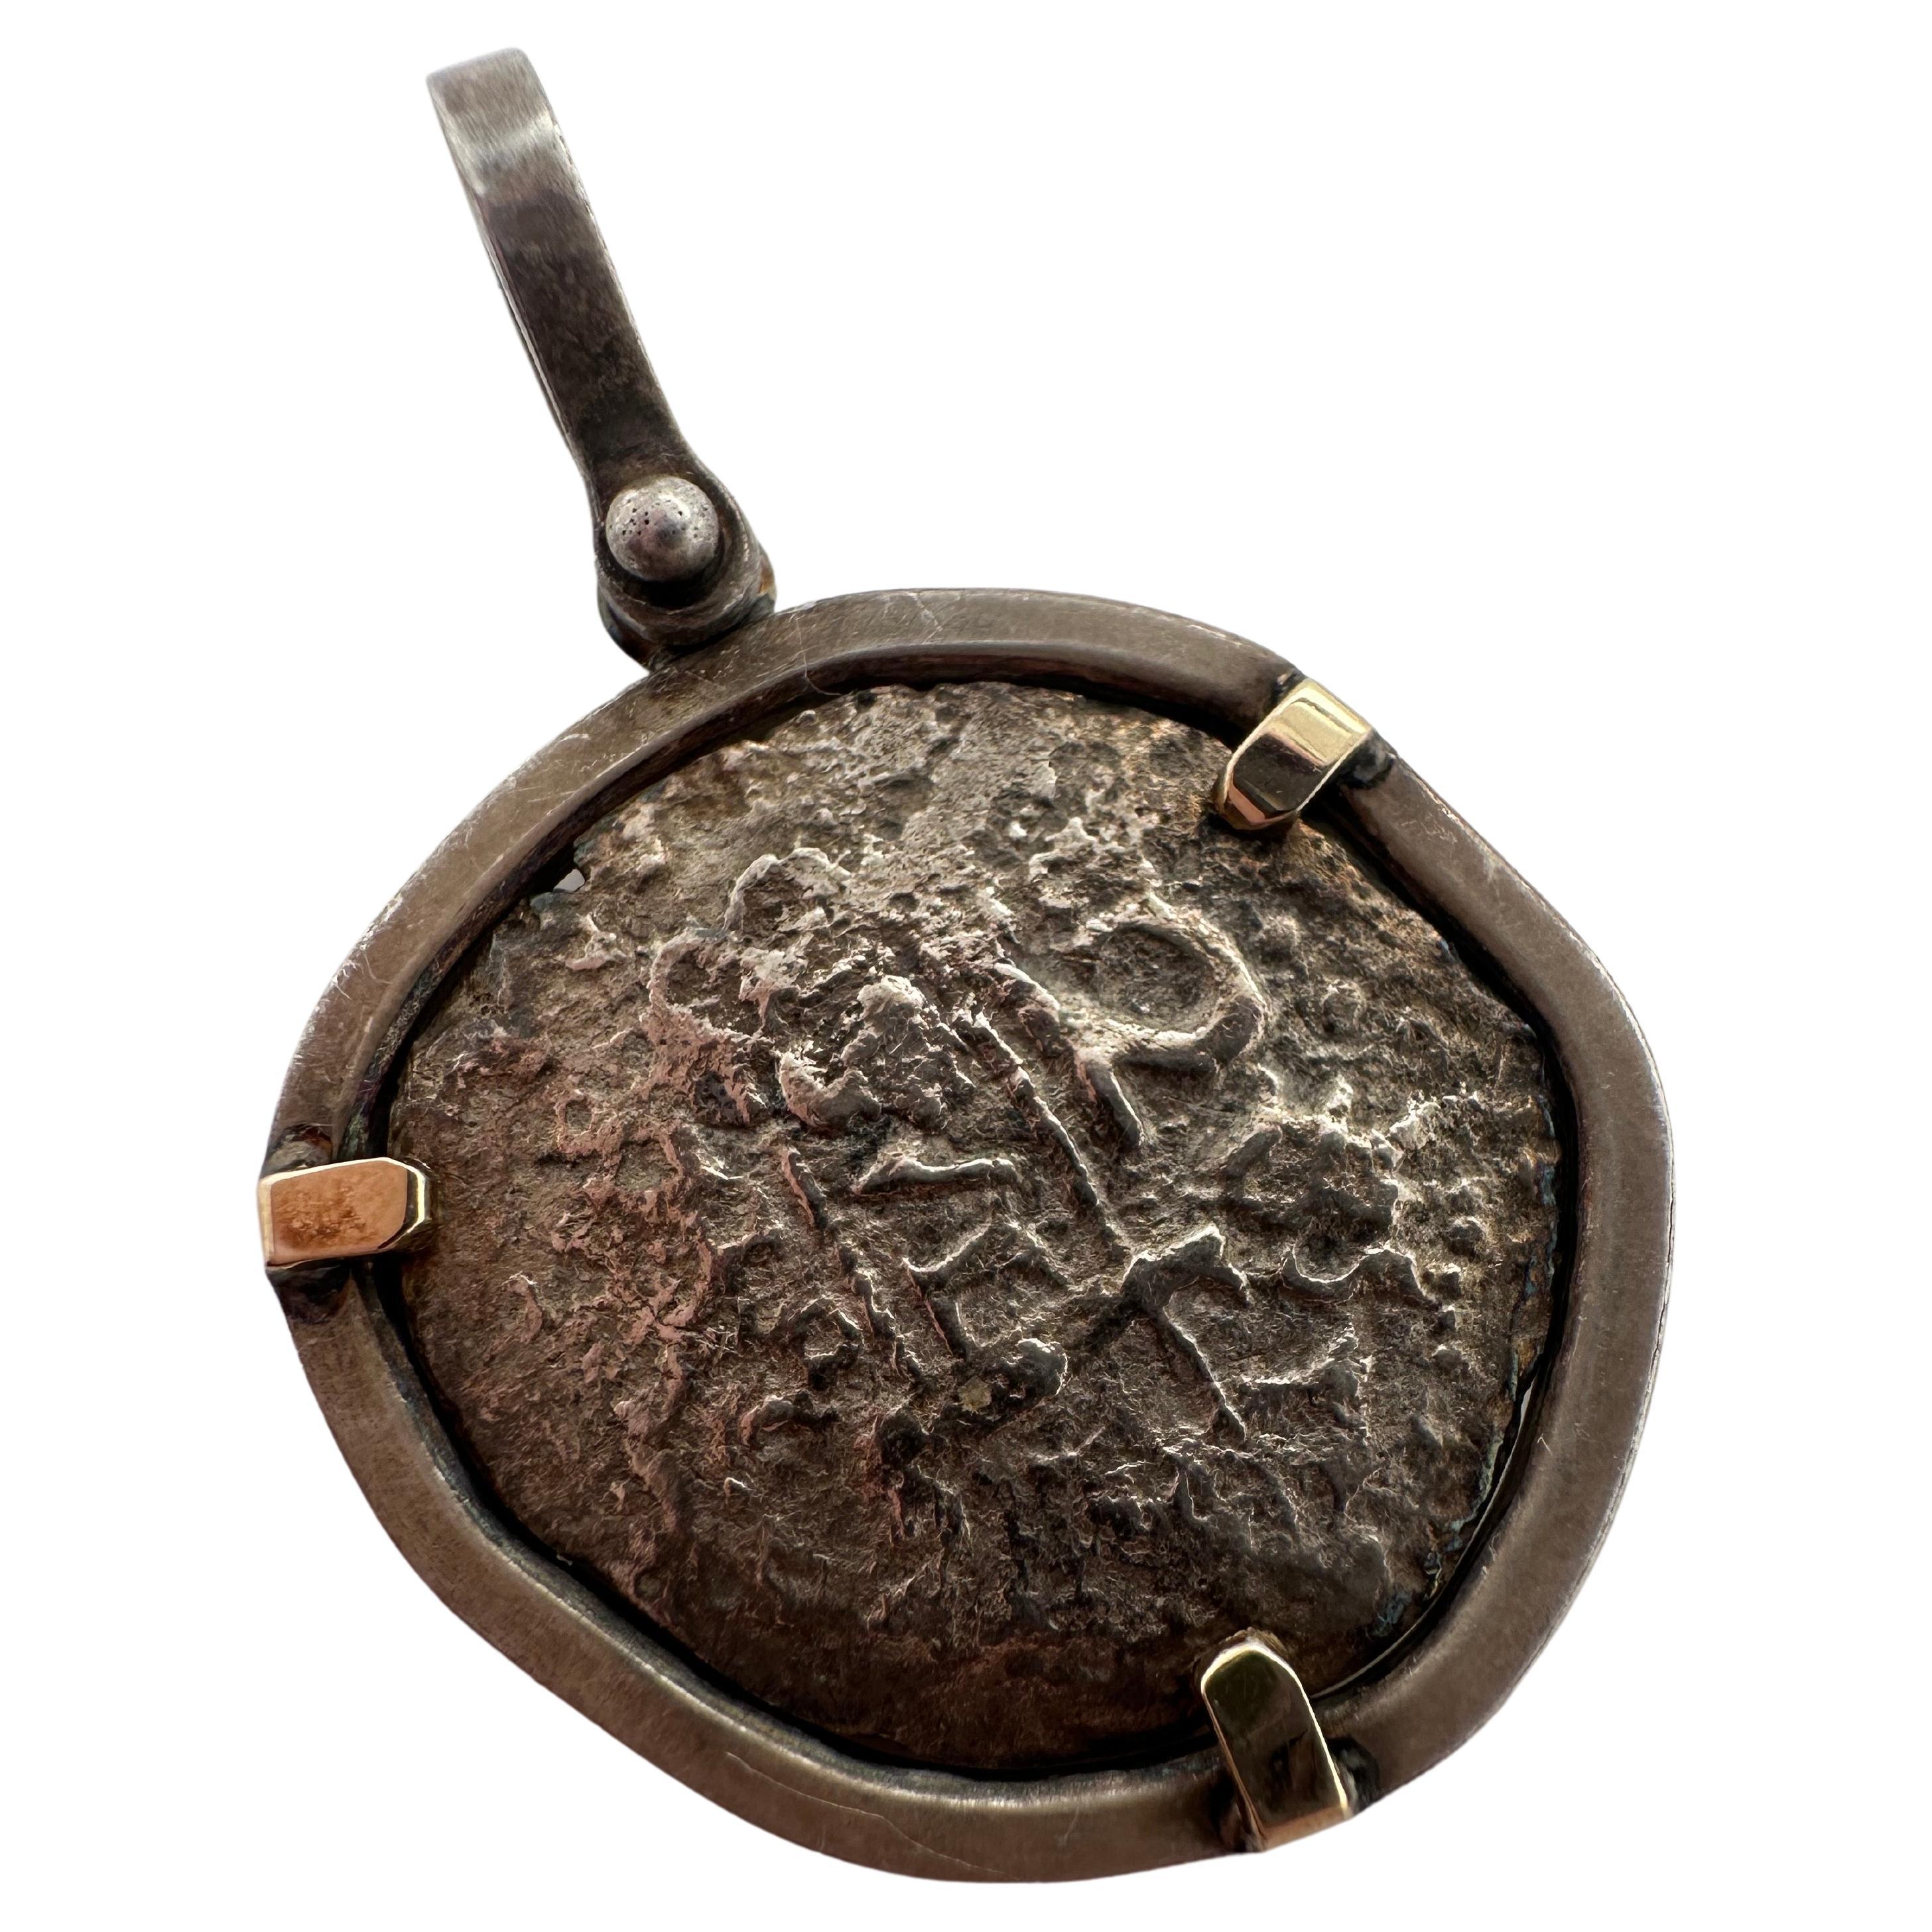 Ein sehr seltenes Stück zu finden, ist dies eine echte authentische Atocha Münze, es wurde durch Generationen weitergegeben und schließlich in unserem Büro gelandet. Es ist authentisch, wie Sie unter dem Mikroskop sehen können, dass die Ornamente